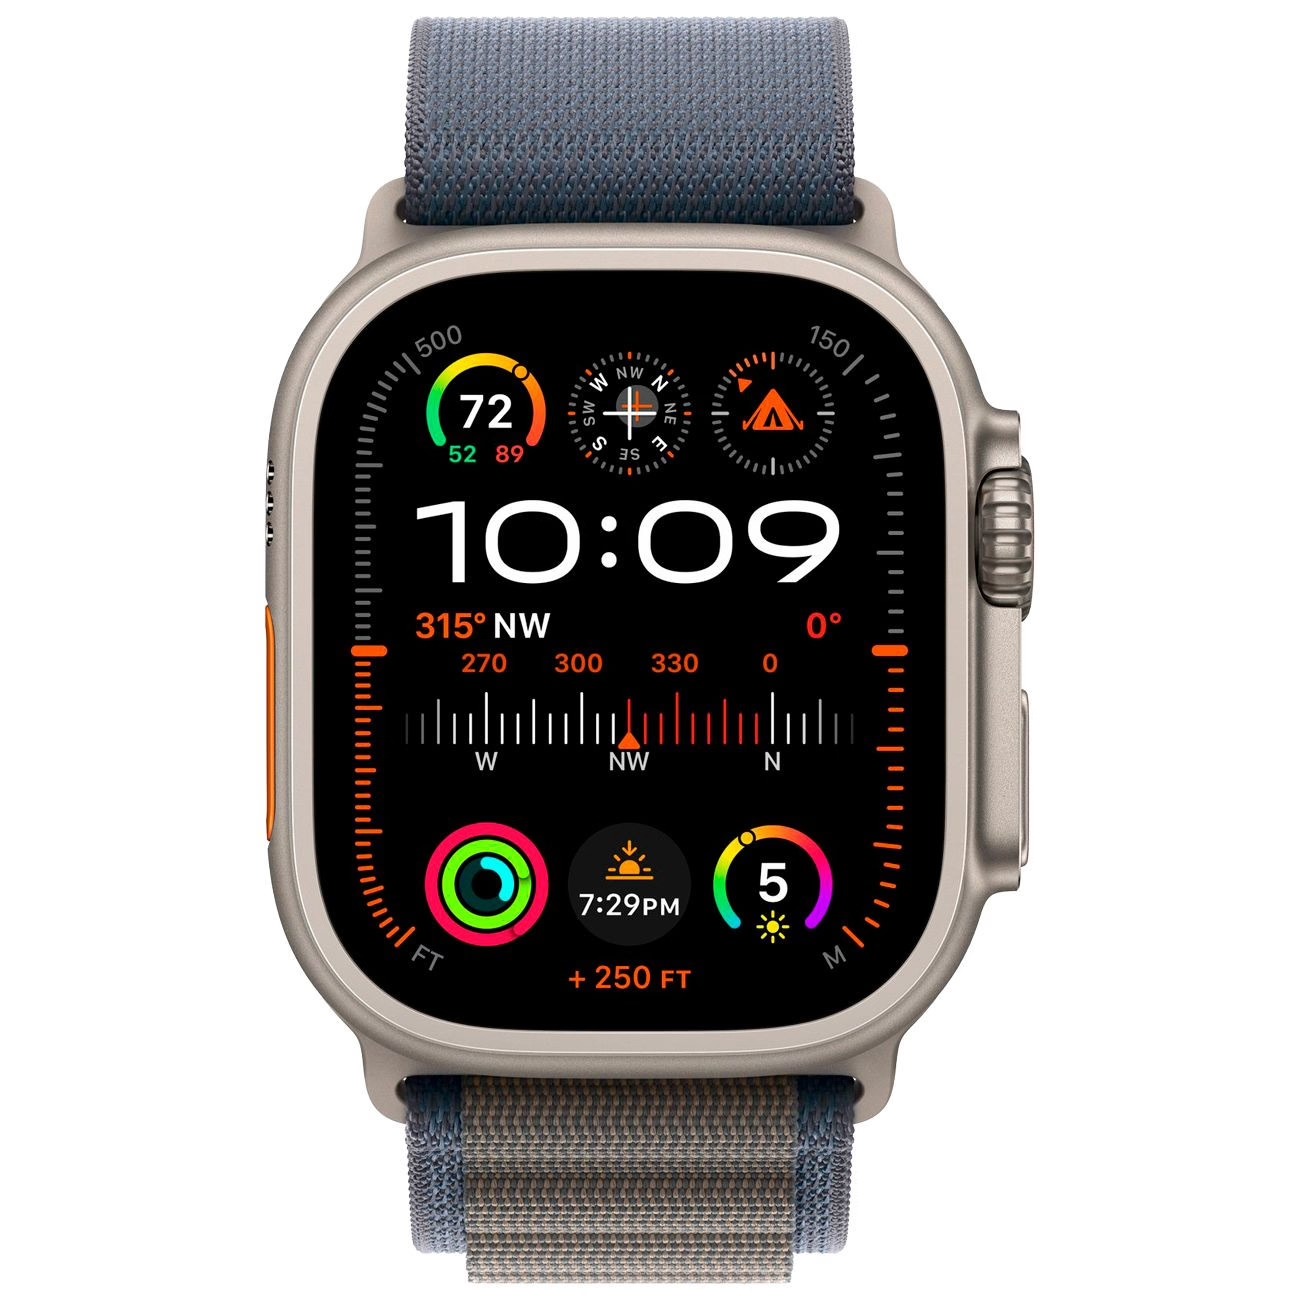 Купить смарт-часы apple watch ultra 2 alpine loop blue Apple Watch Ultra 2 в официальном магазине Apple, Samsung, Xiaomi. iPixel.ru Купить, заказ, кредит, рассрочка, отзывы,  характеристики, цена,  фотографии, в подарок.